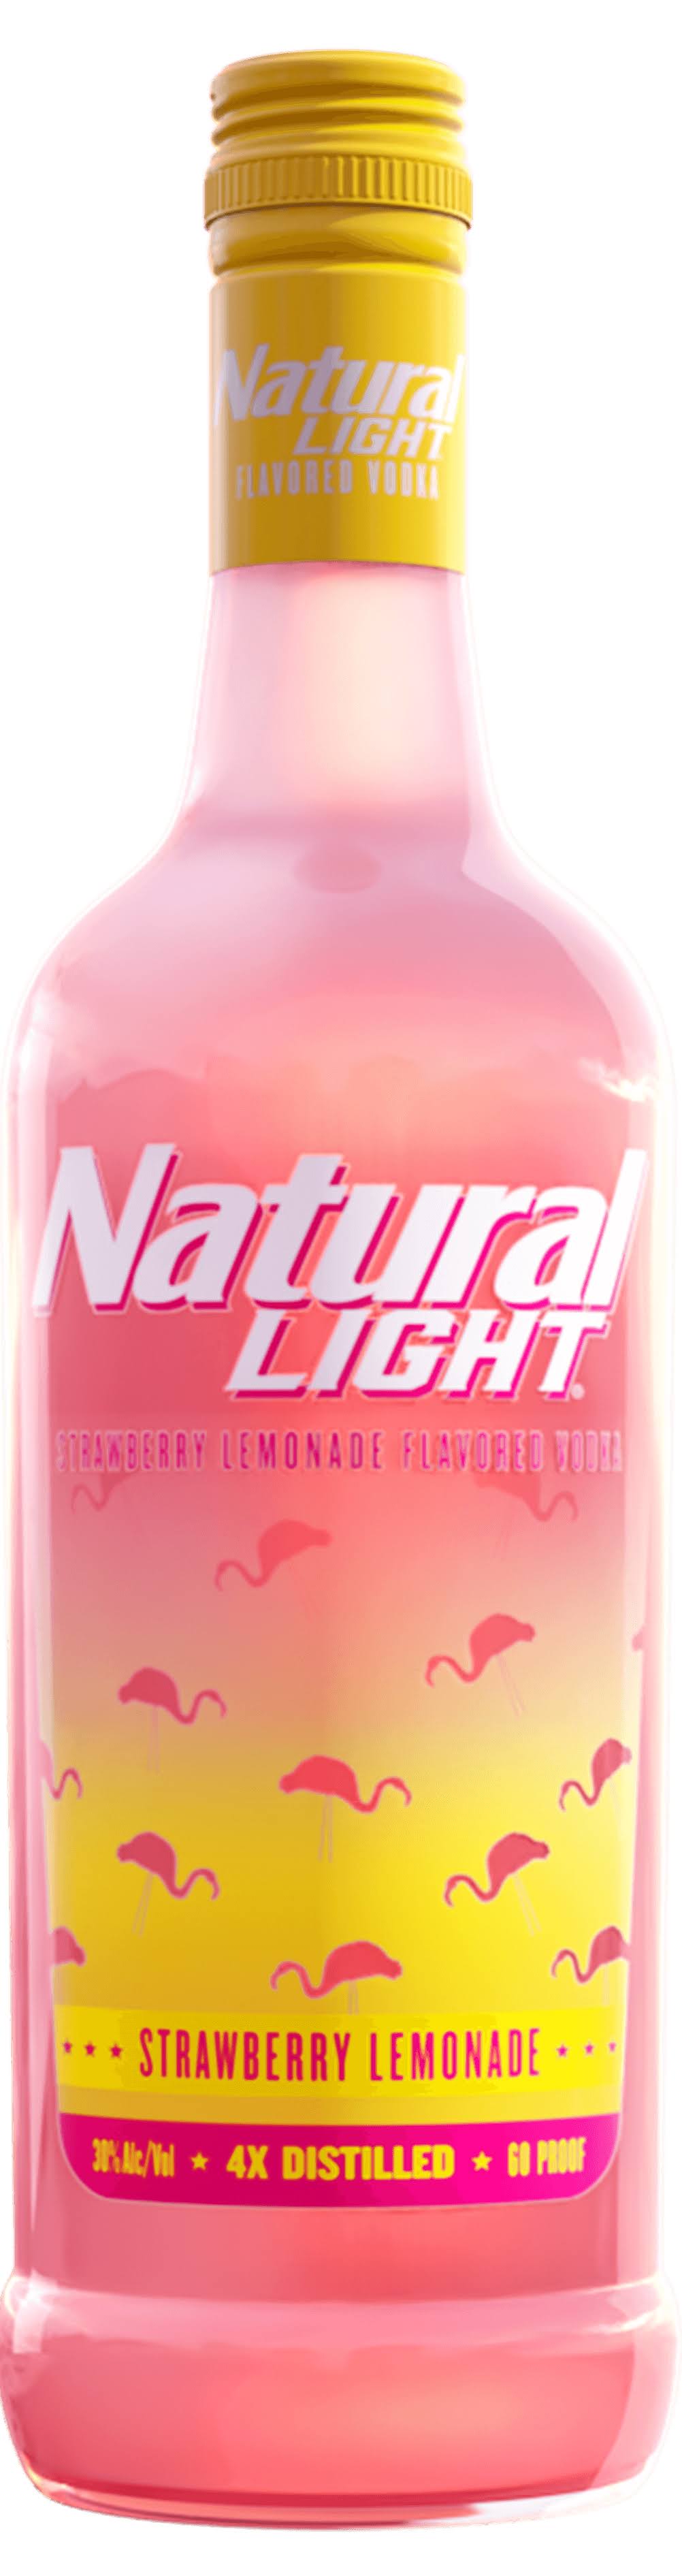 Natural Light - Strawberry Lemonade Vodka (750ml)